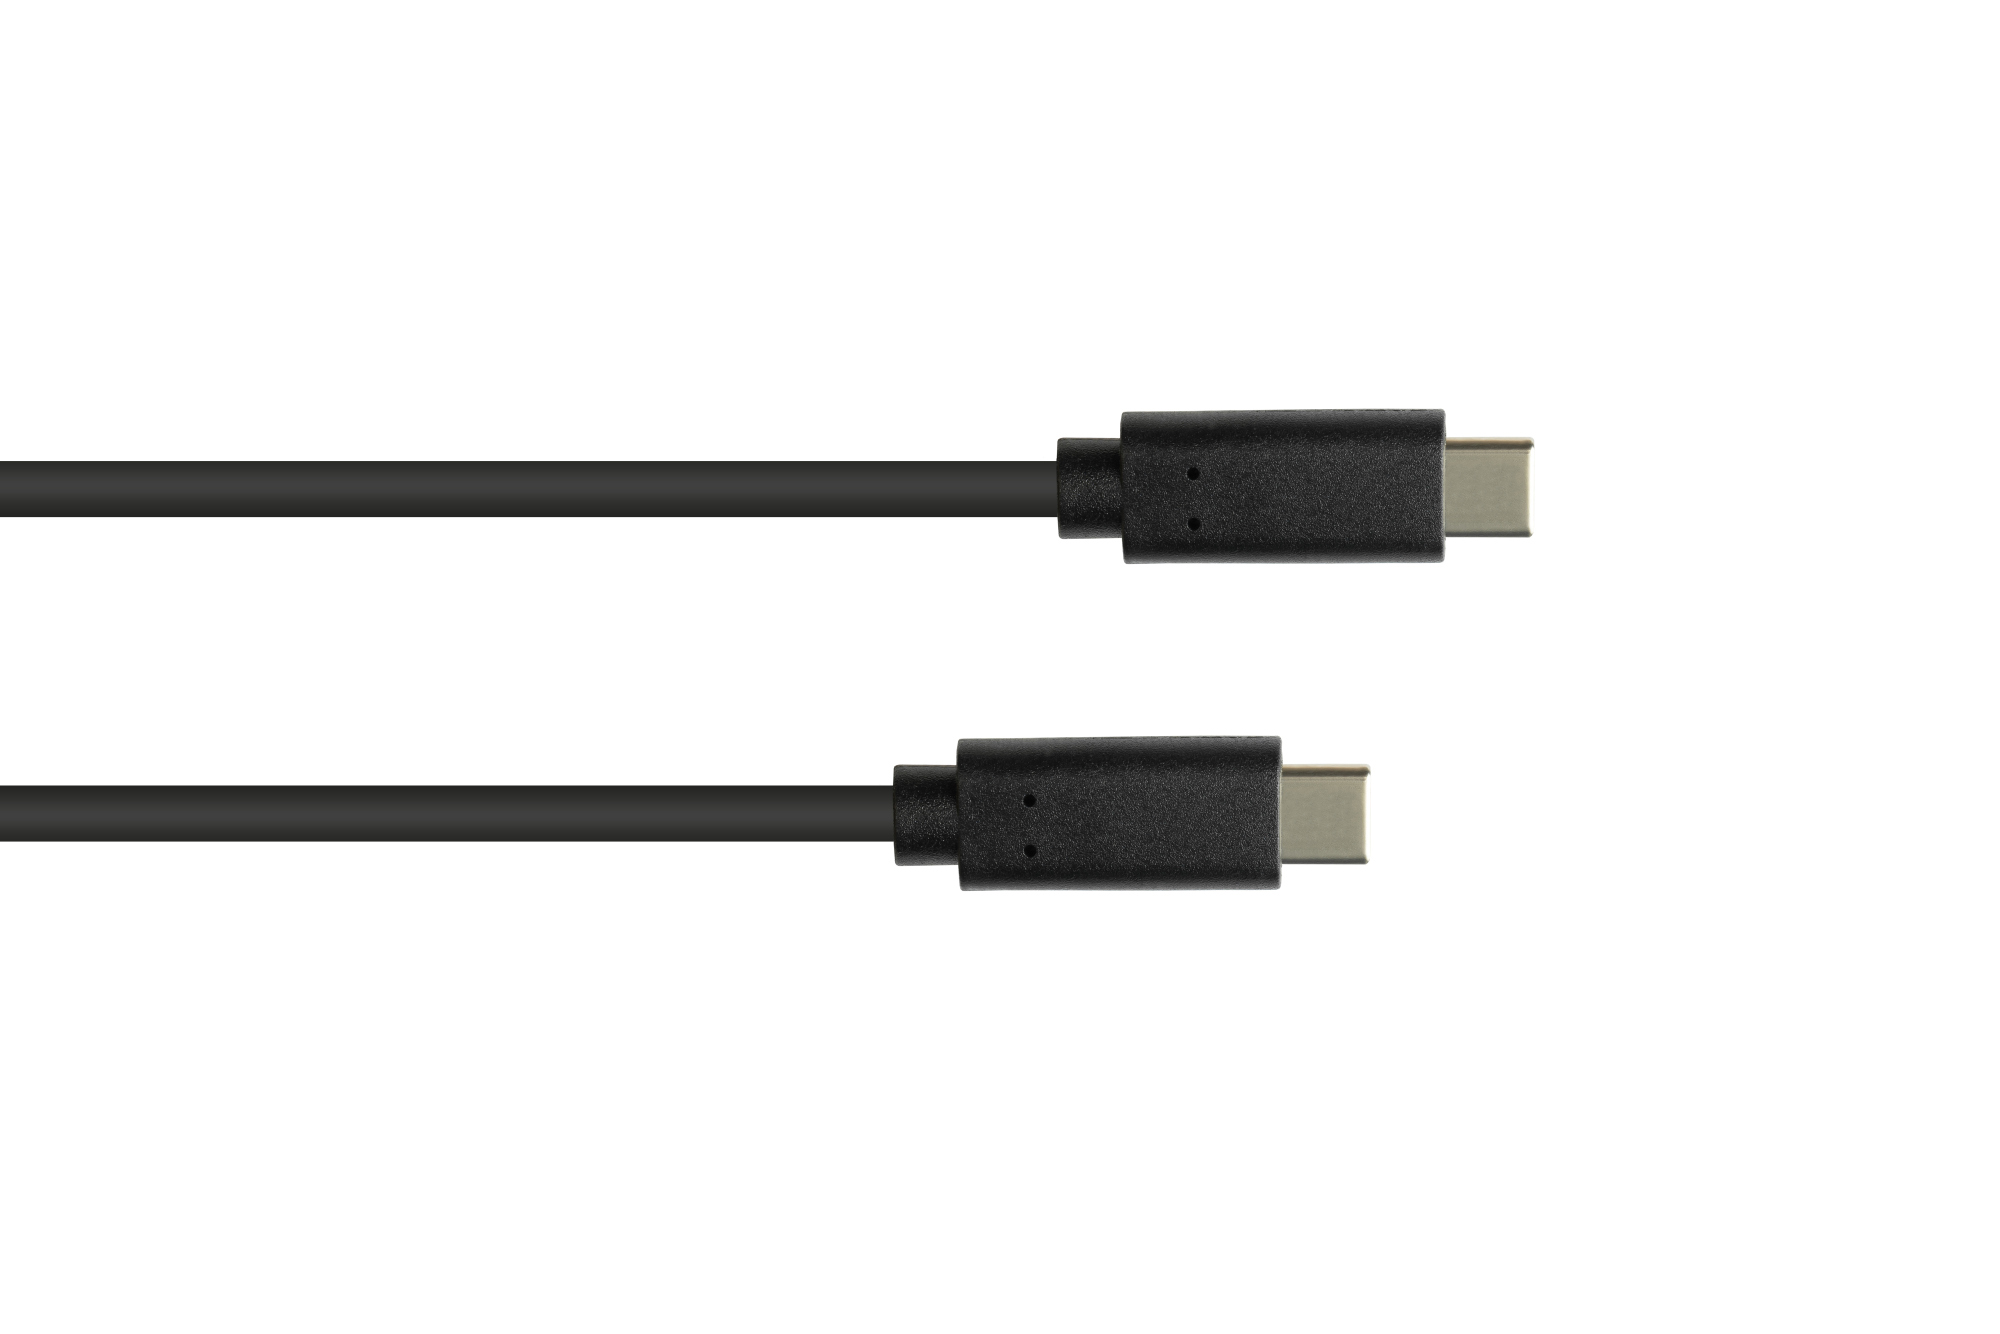 Lade- und Datenkabel USB 3.1 (Gen.1), USB-C™ Stecker beidseitig, CU, schwarz, 0,5m, Good Connections